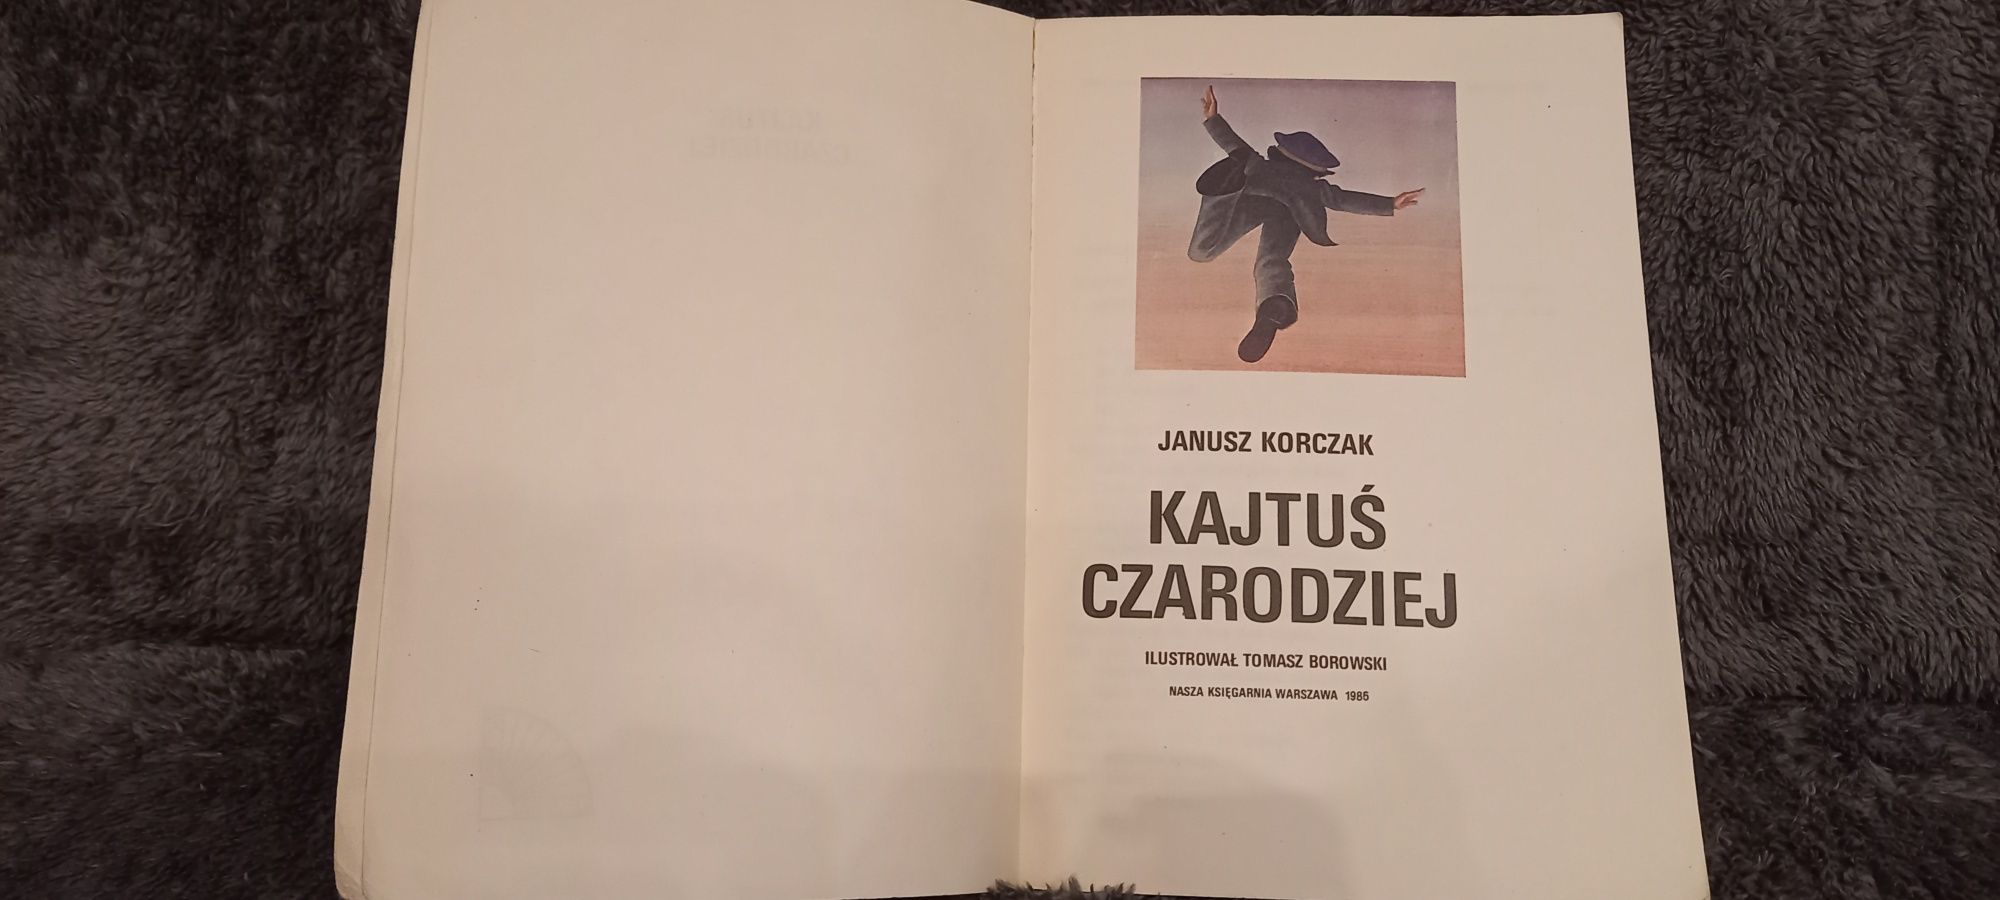 Kajtuś Czarodziej Janusz Korczak